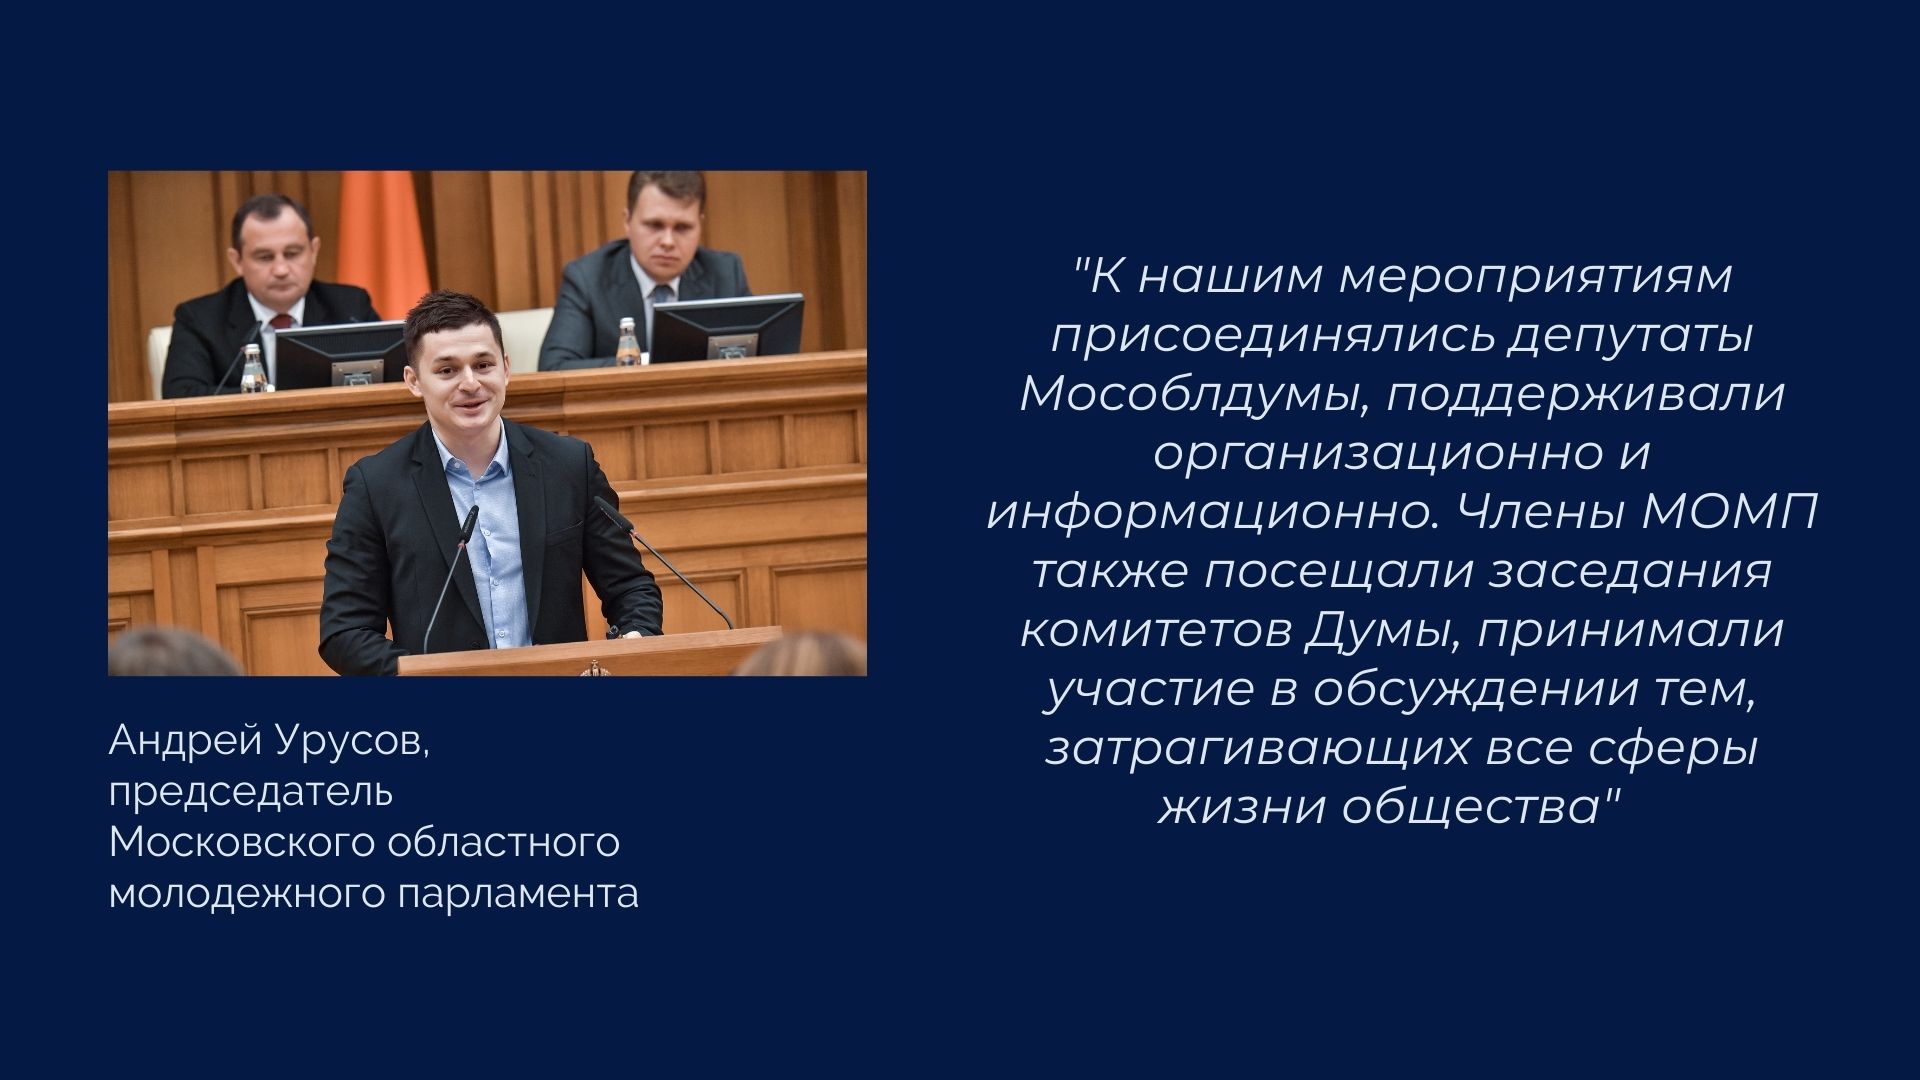 Итоги VI созыва МОД: Московский областной молодёжный парламент разработал за пять лет 19 законопроектов